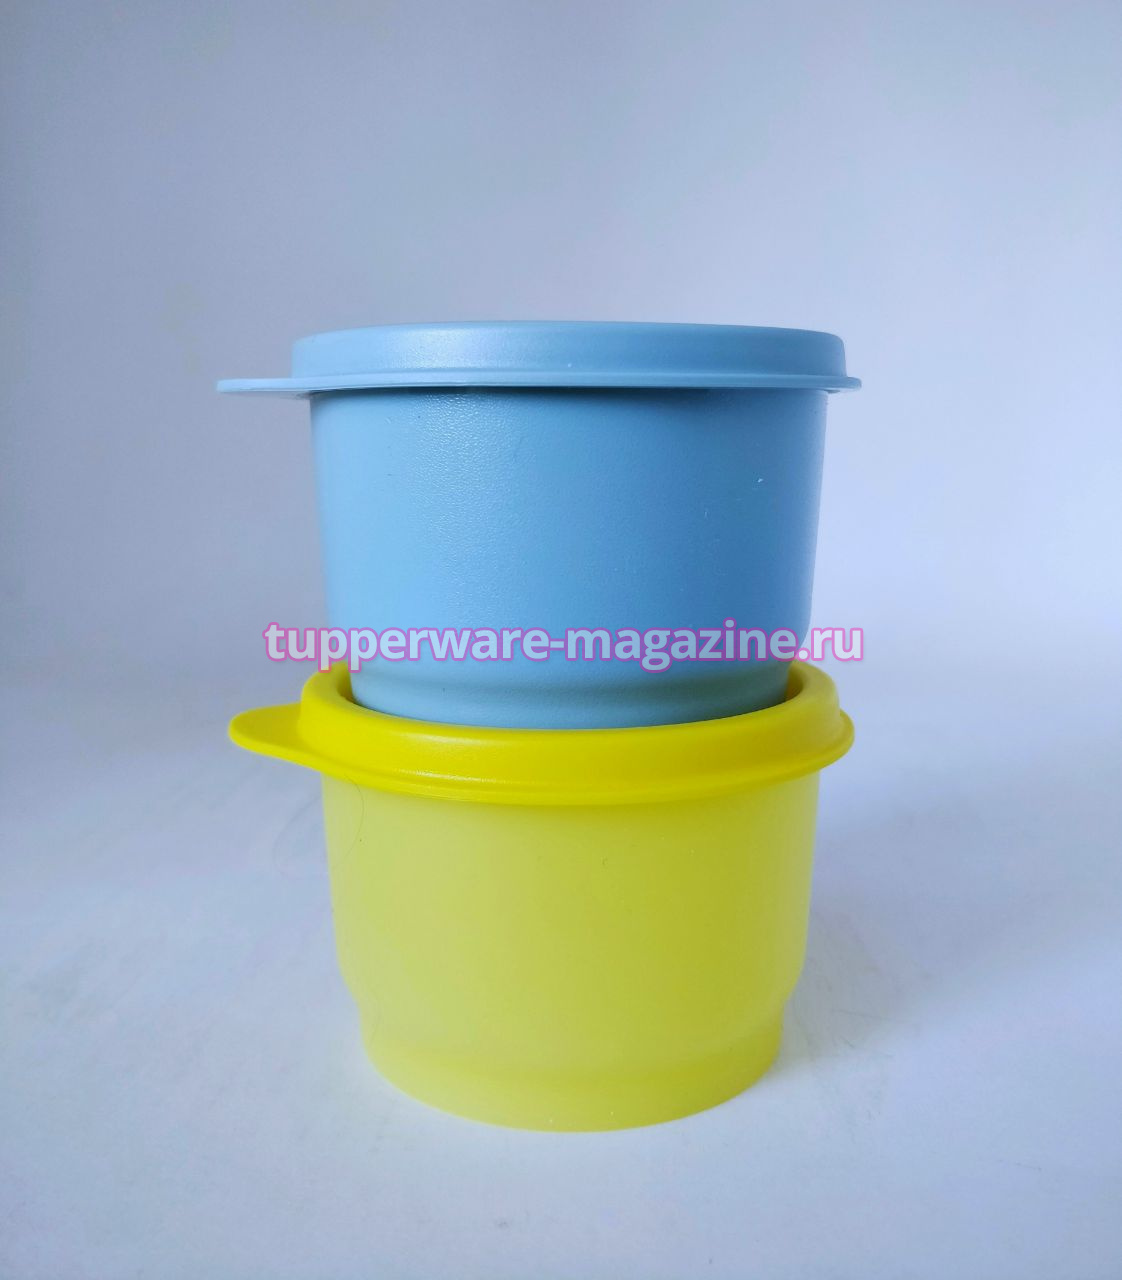 Закусочный стаканчик цветной (набор 2 шт) желтый, голубой